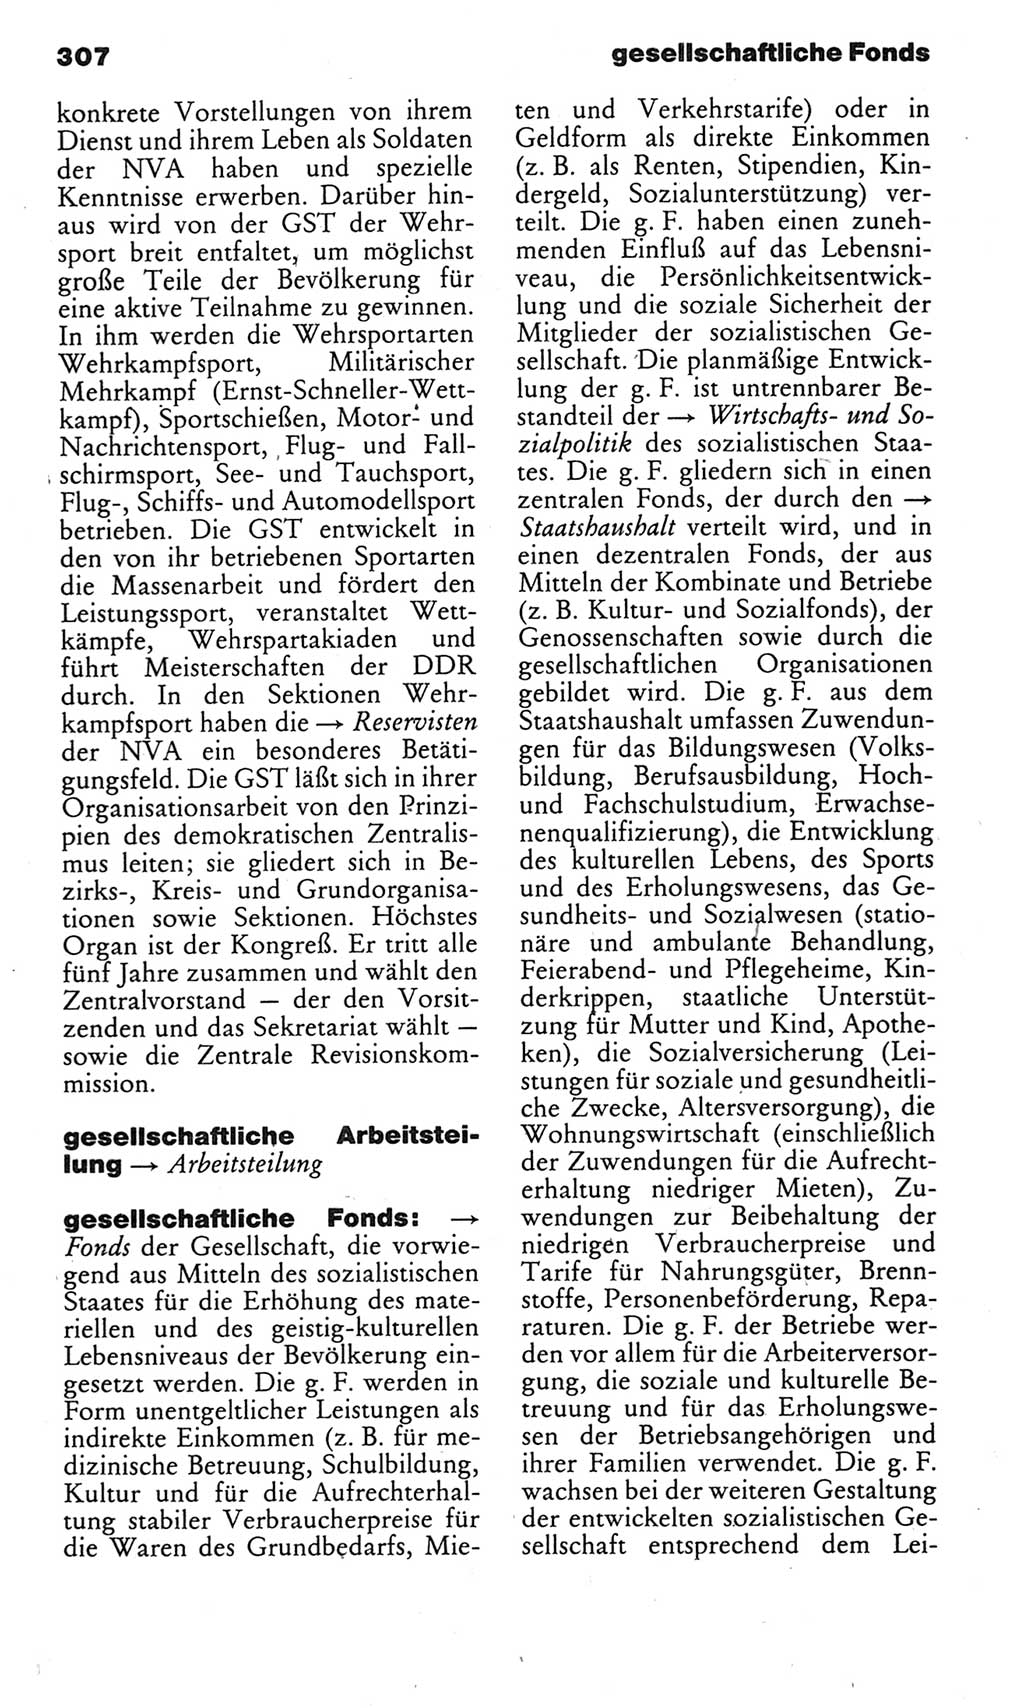 Kleines politisches Wörterbuch [Deutsche Demokratische Republik (DDR)] 1985, Seite 307 (Kl. pol. Wb. DDR 1985, S. 307)